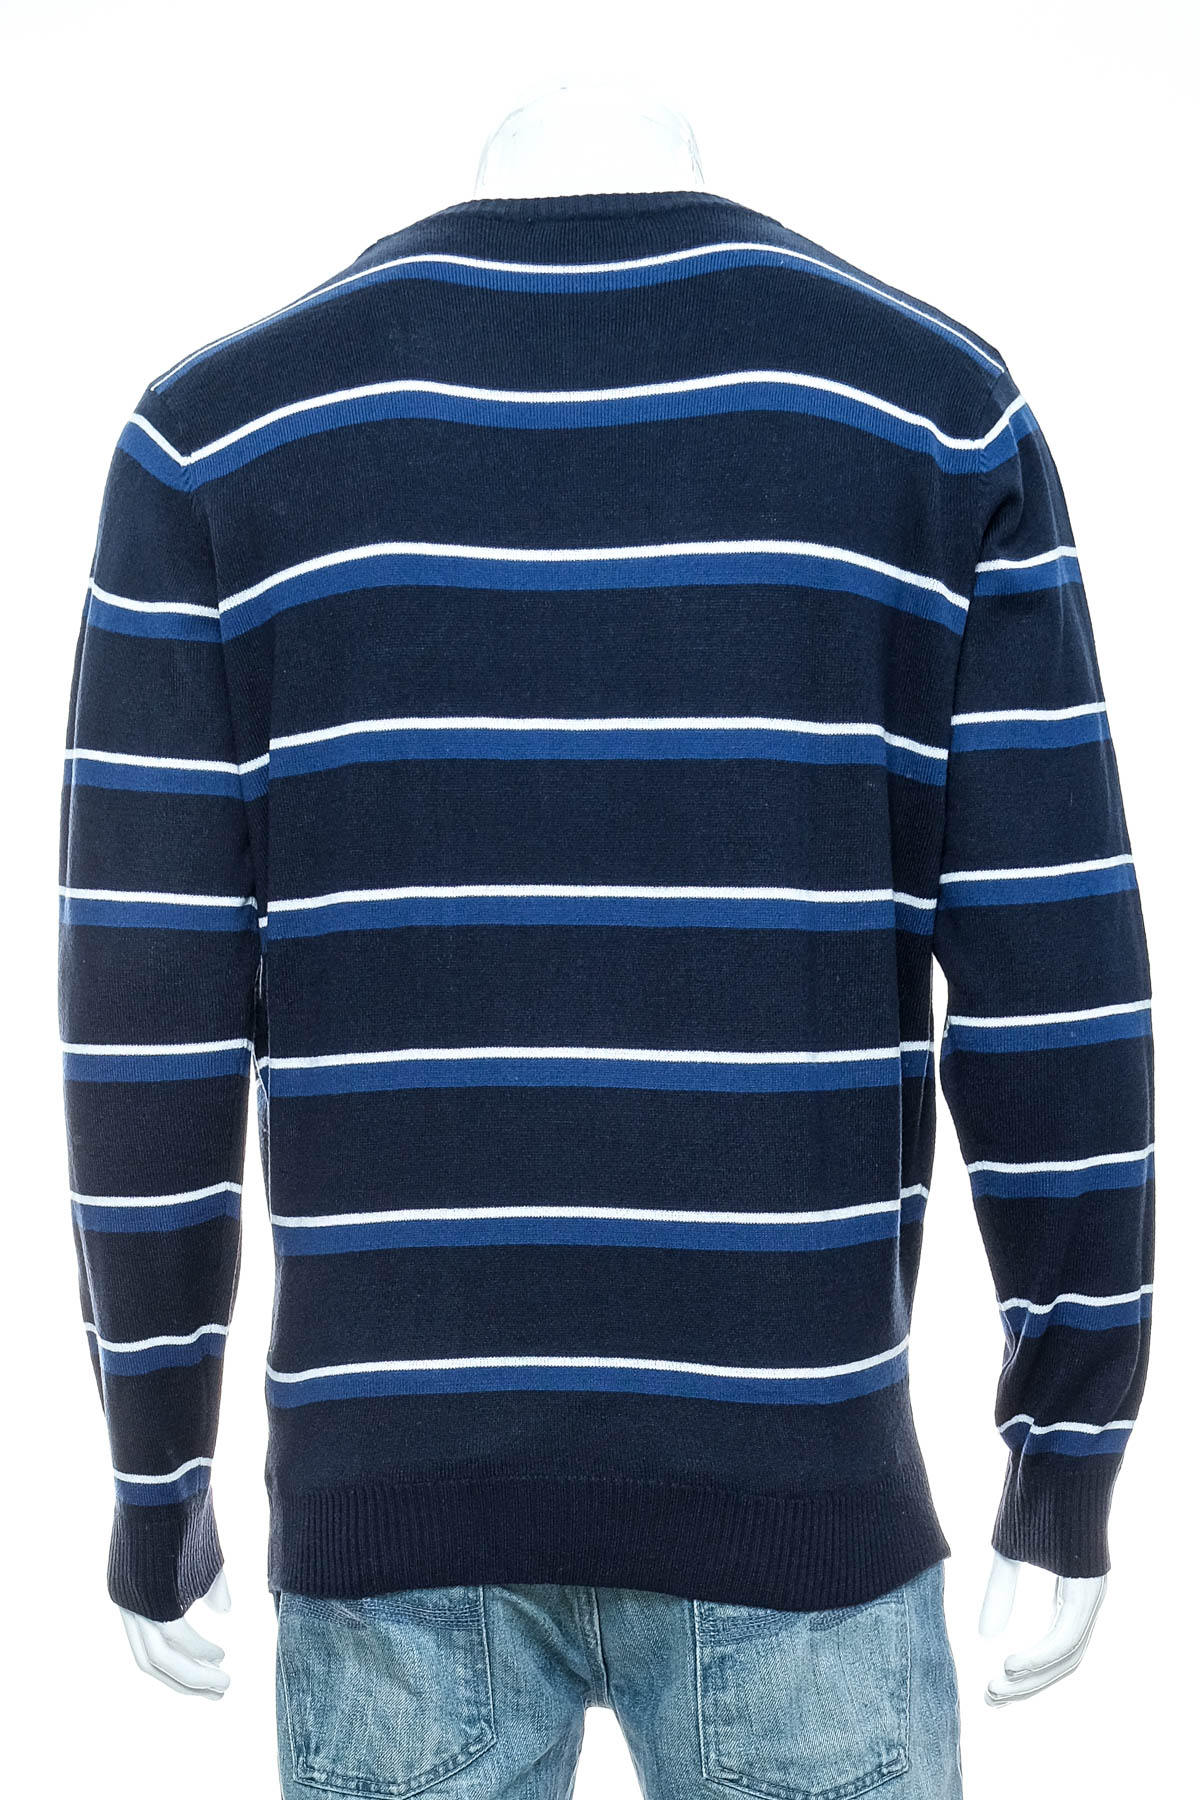 Men's sweater - Identic - 1